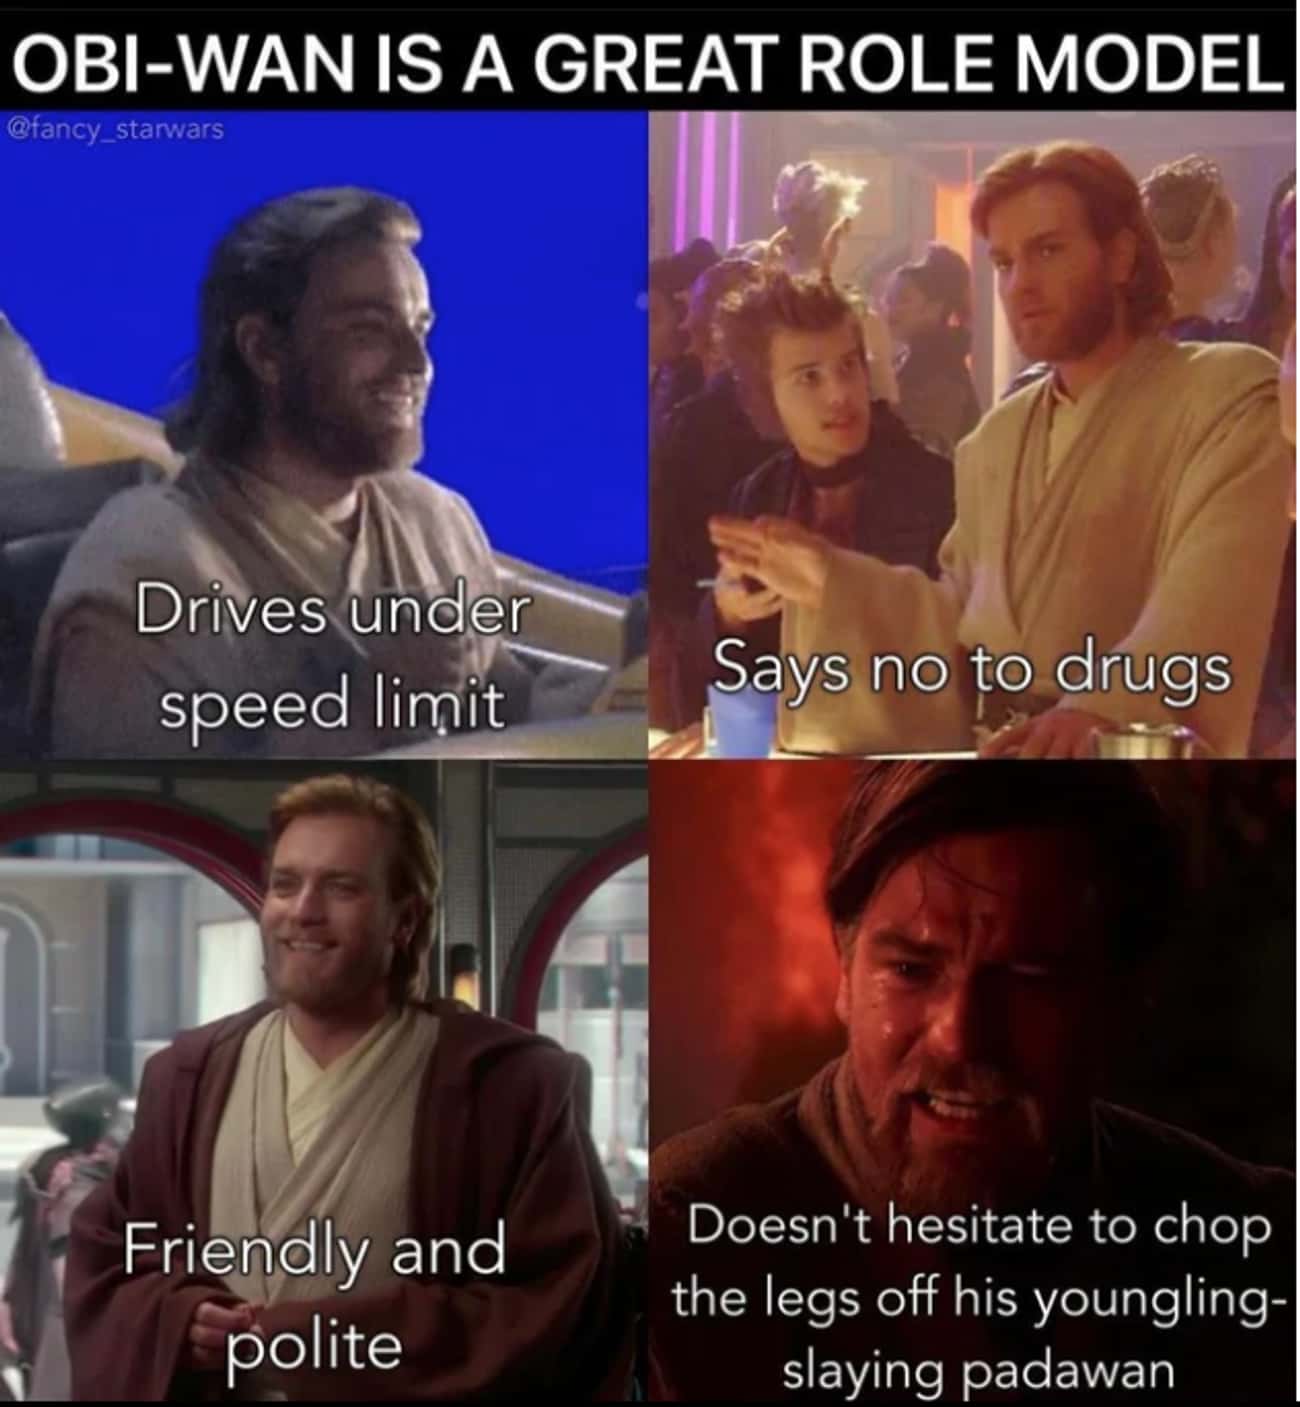 Be More Like Obi-Wan